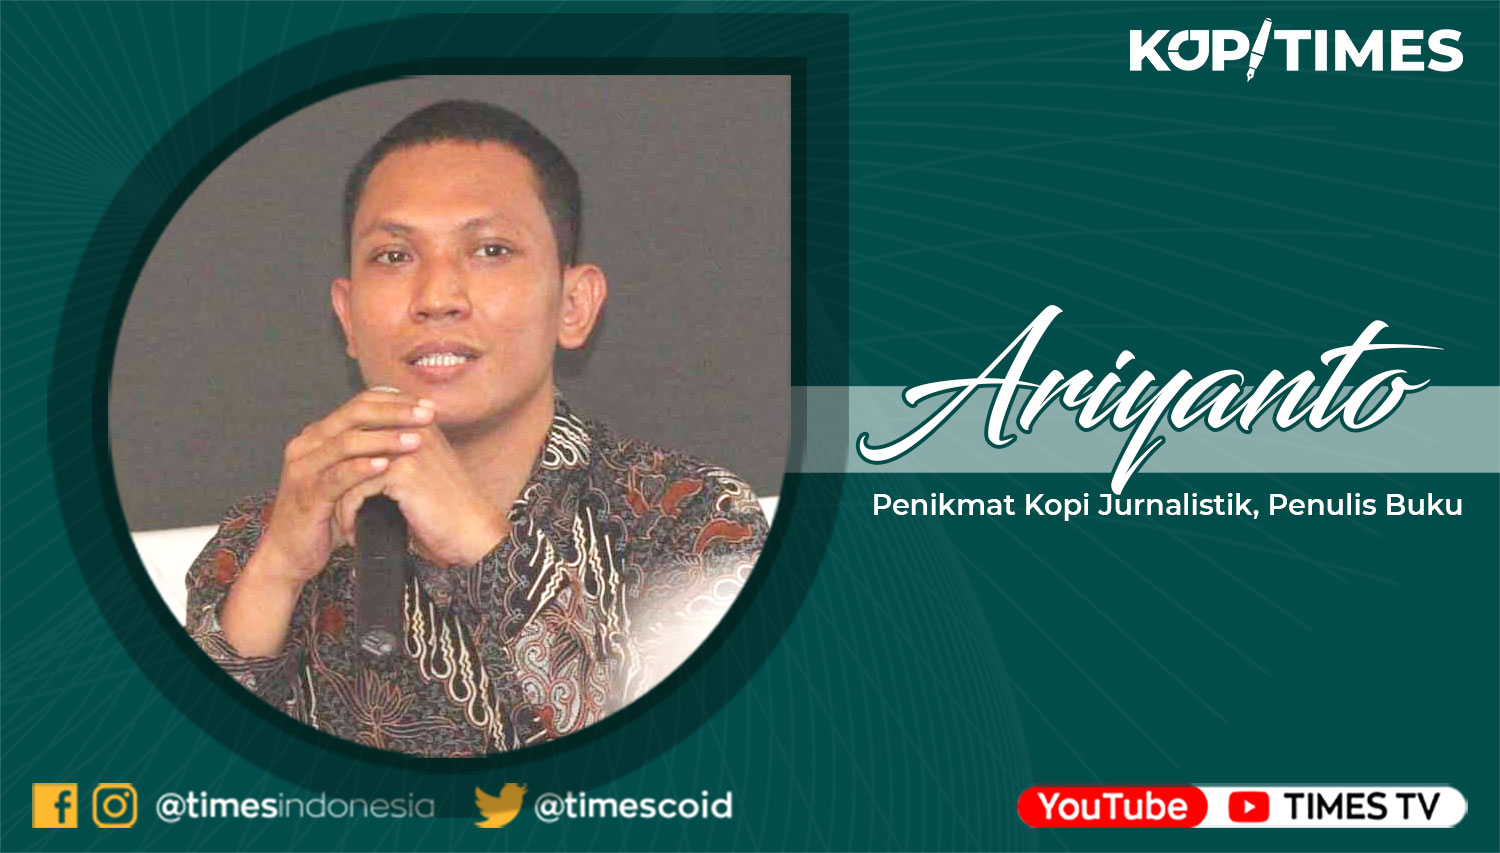 Ariyanto, Penikmat Kopi Jurnalistik, Penulis Buku.